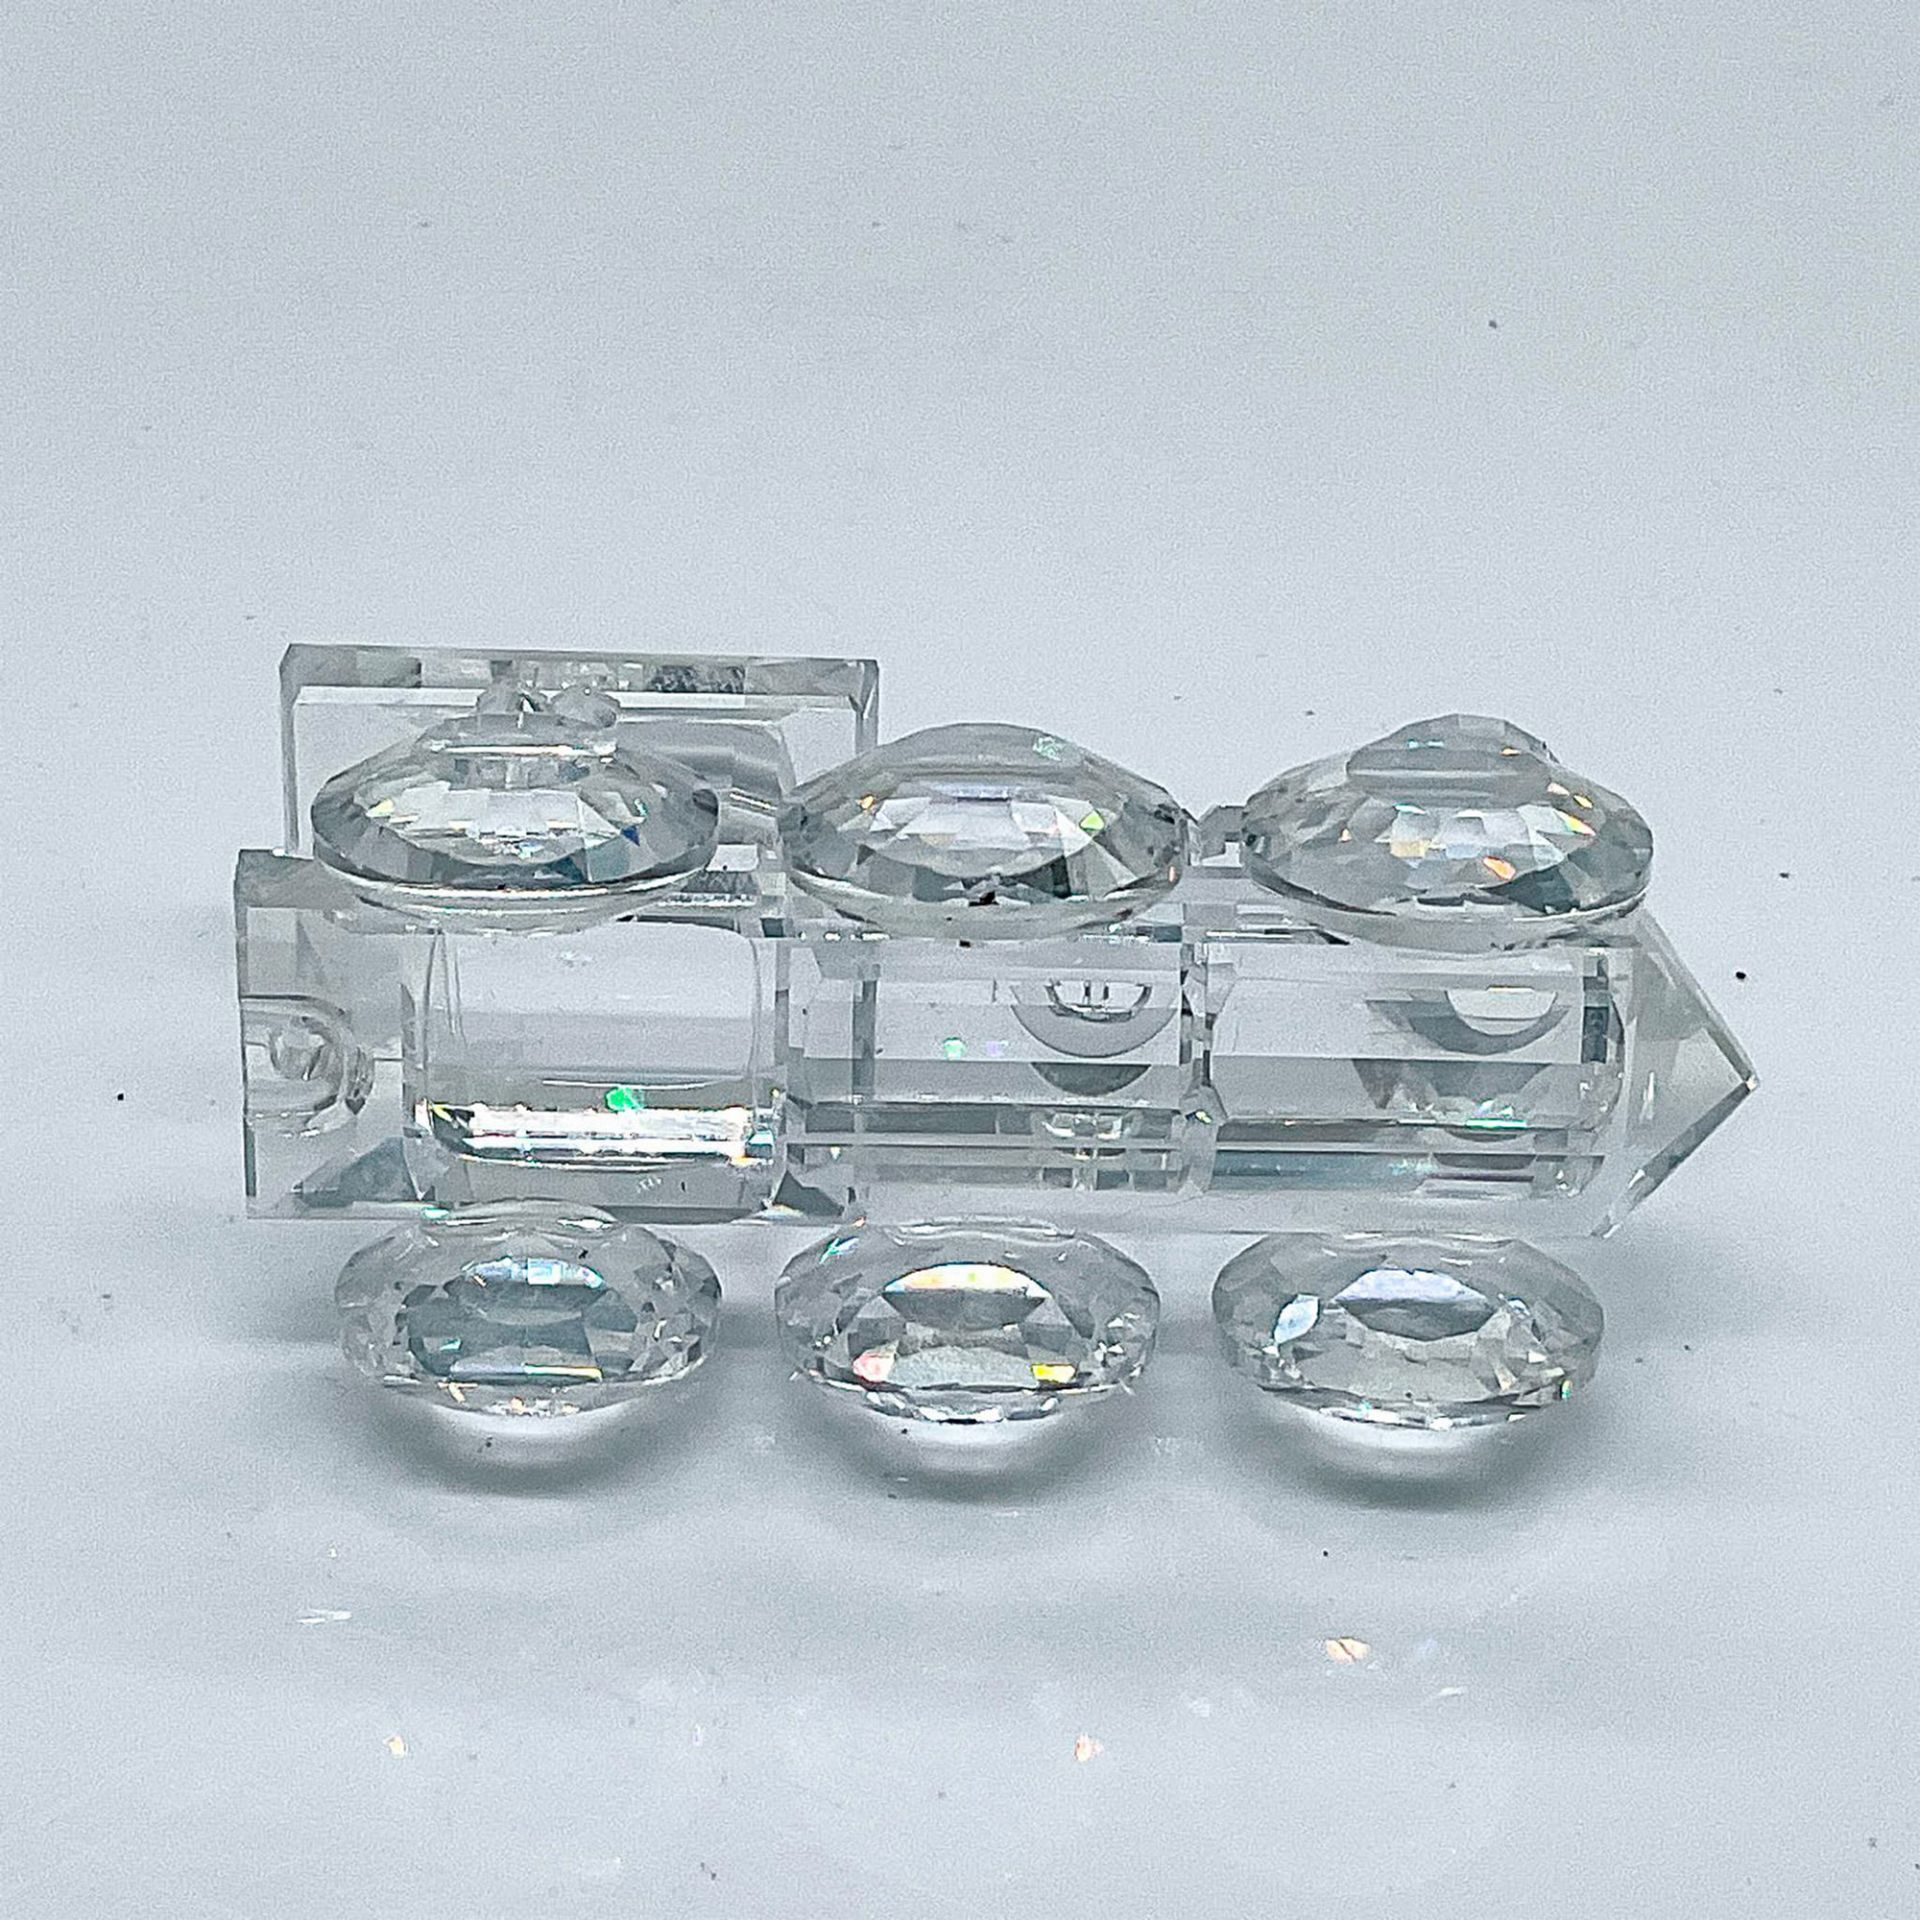 Swarovski Crystal Figurine, Locomotive - Image 3 of 4